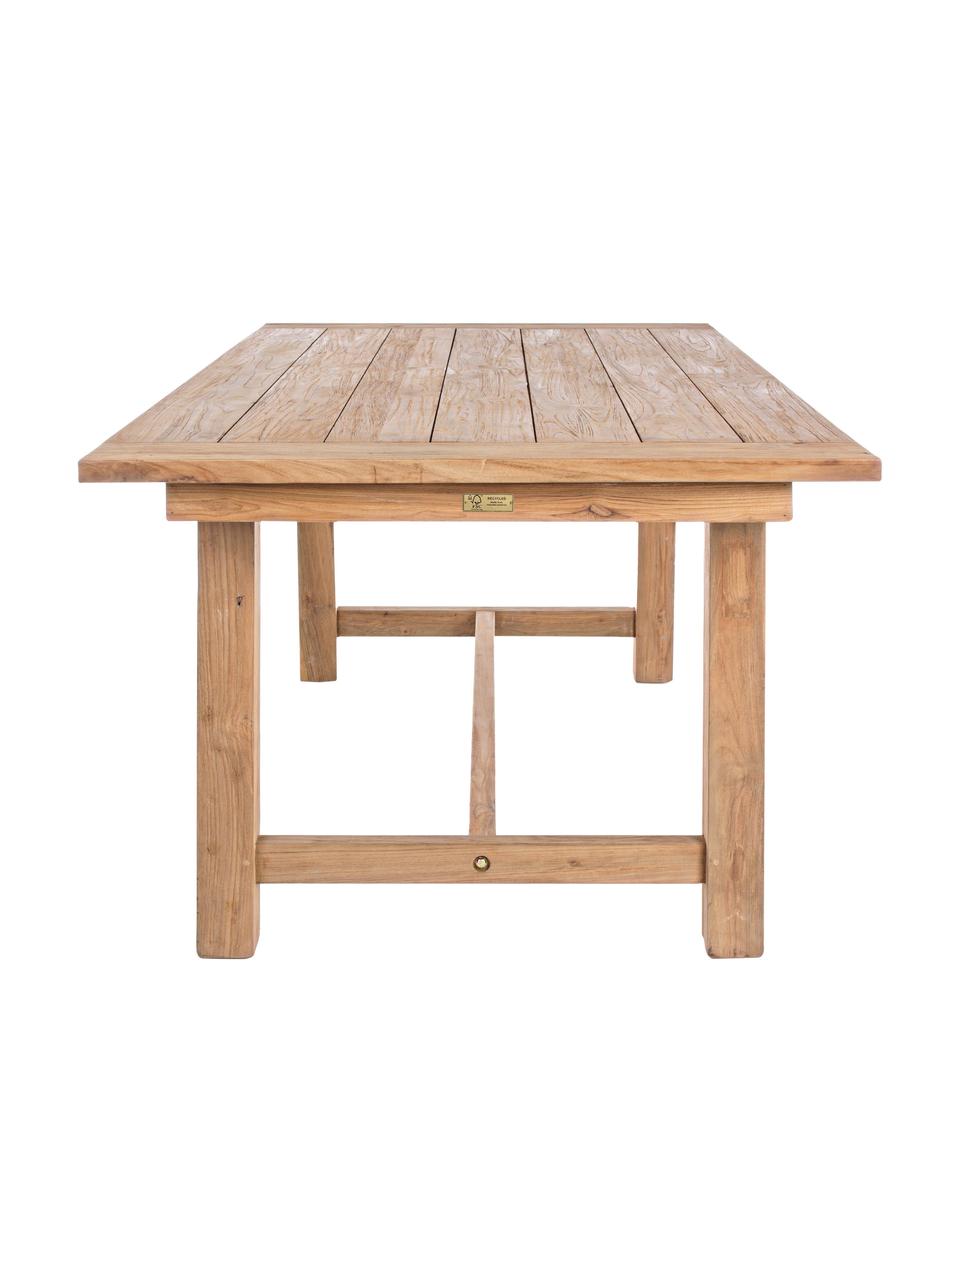 Zahradní jídelní stůl z teakového dřevo Nairobi. 200 x 100 cm, Recyklované teakové dřevo, Teakové dřevo, Š 200 cm, H 100 cm